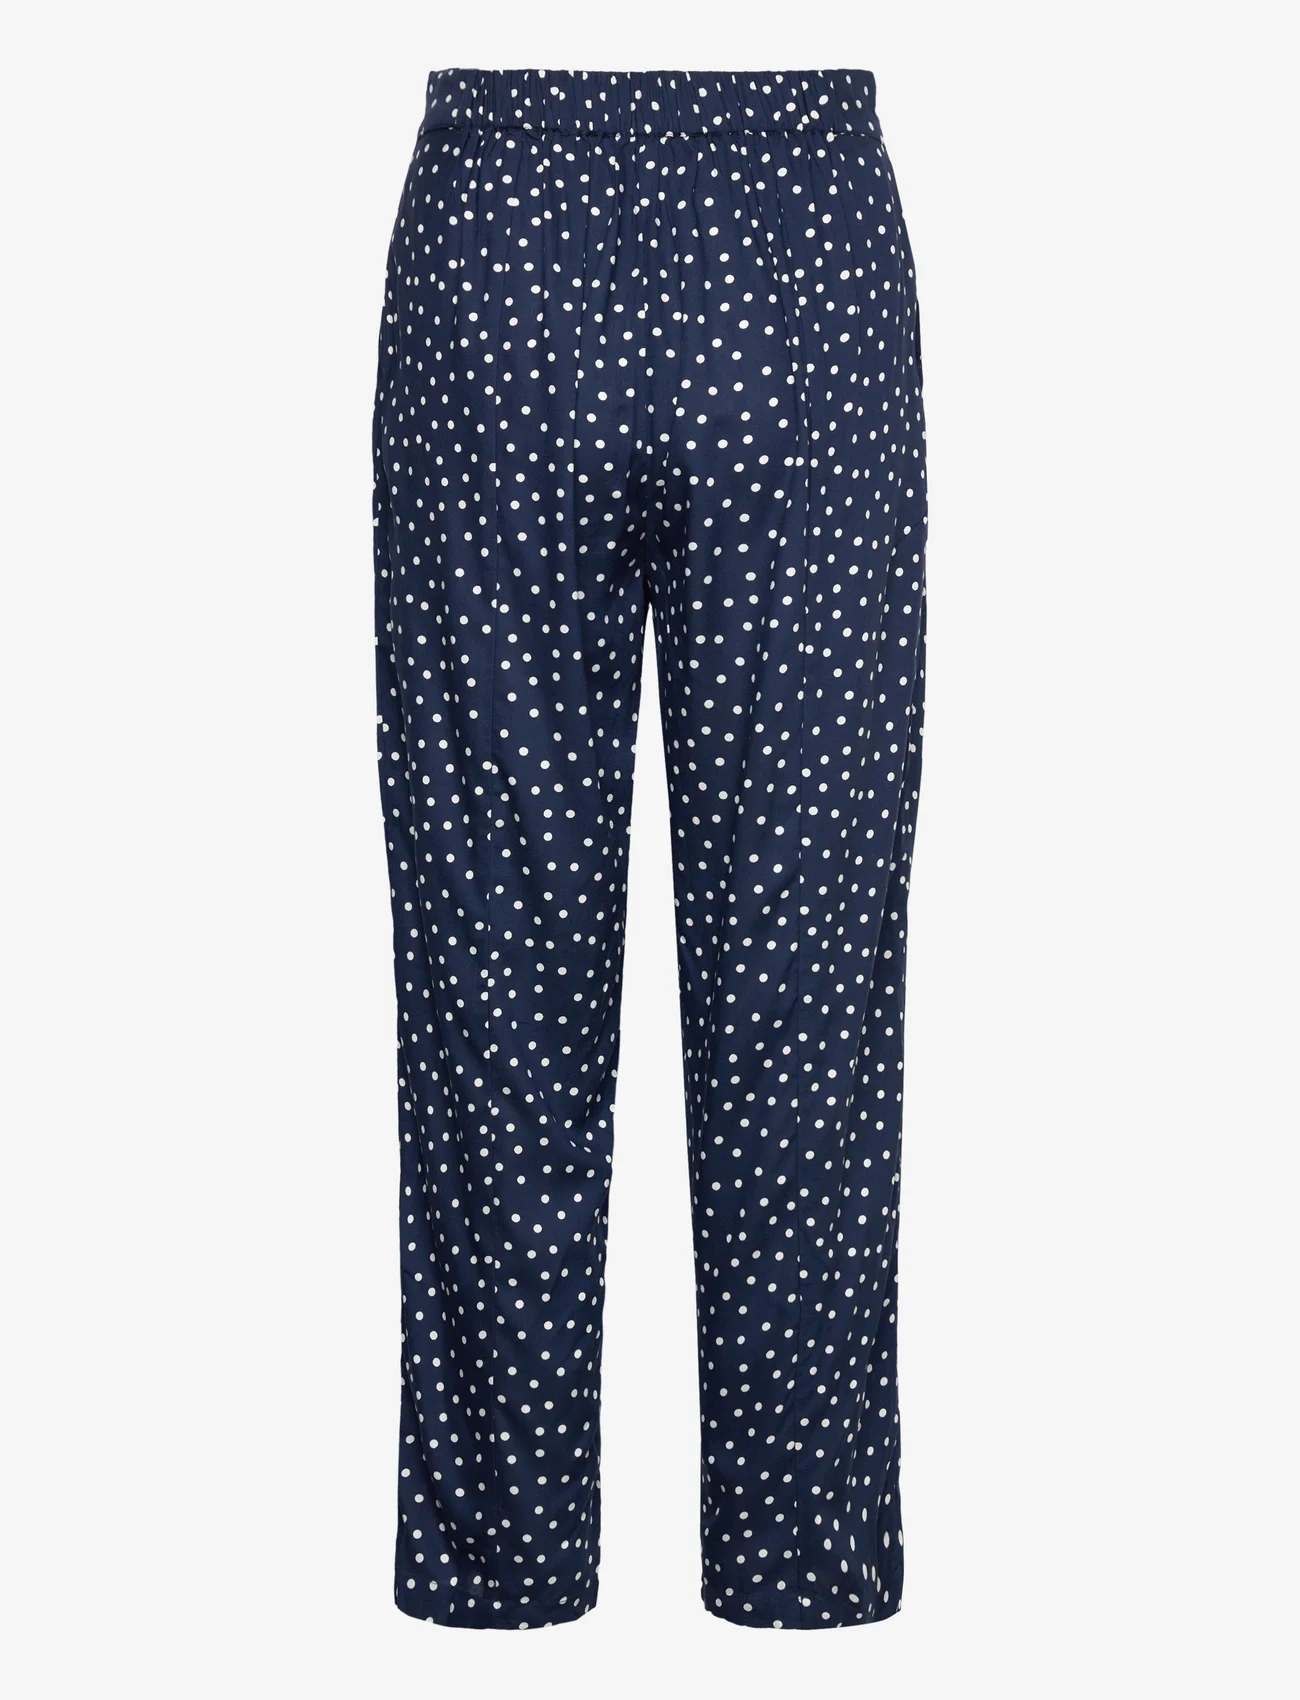 Lollys Laundry - Maisie Pants - bukser med lige ben - 76 dot print - 1